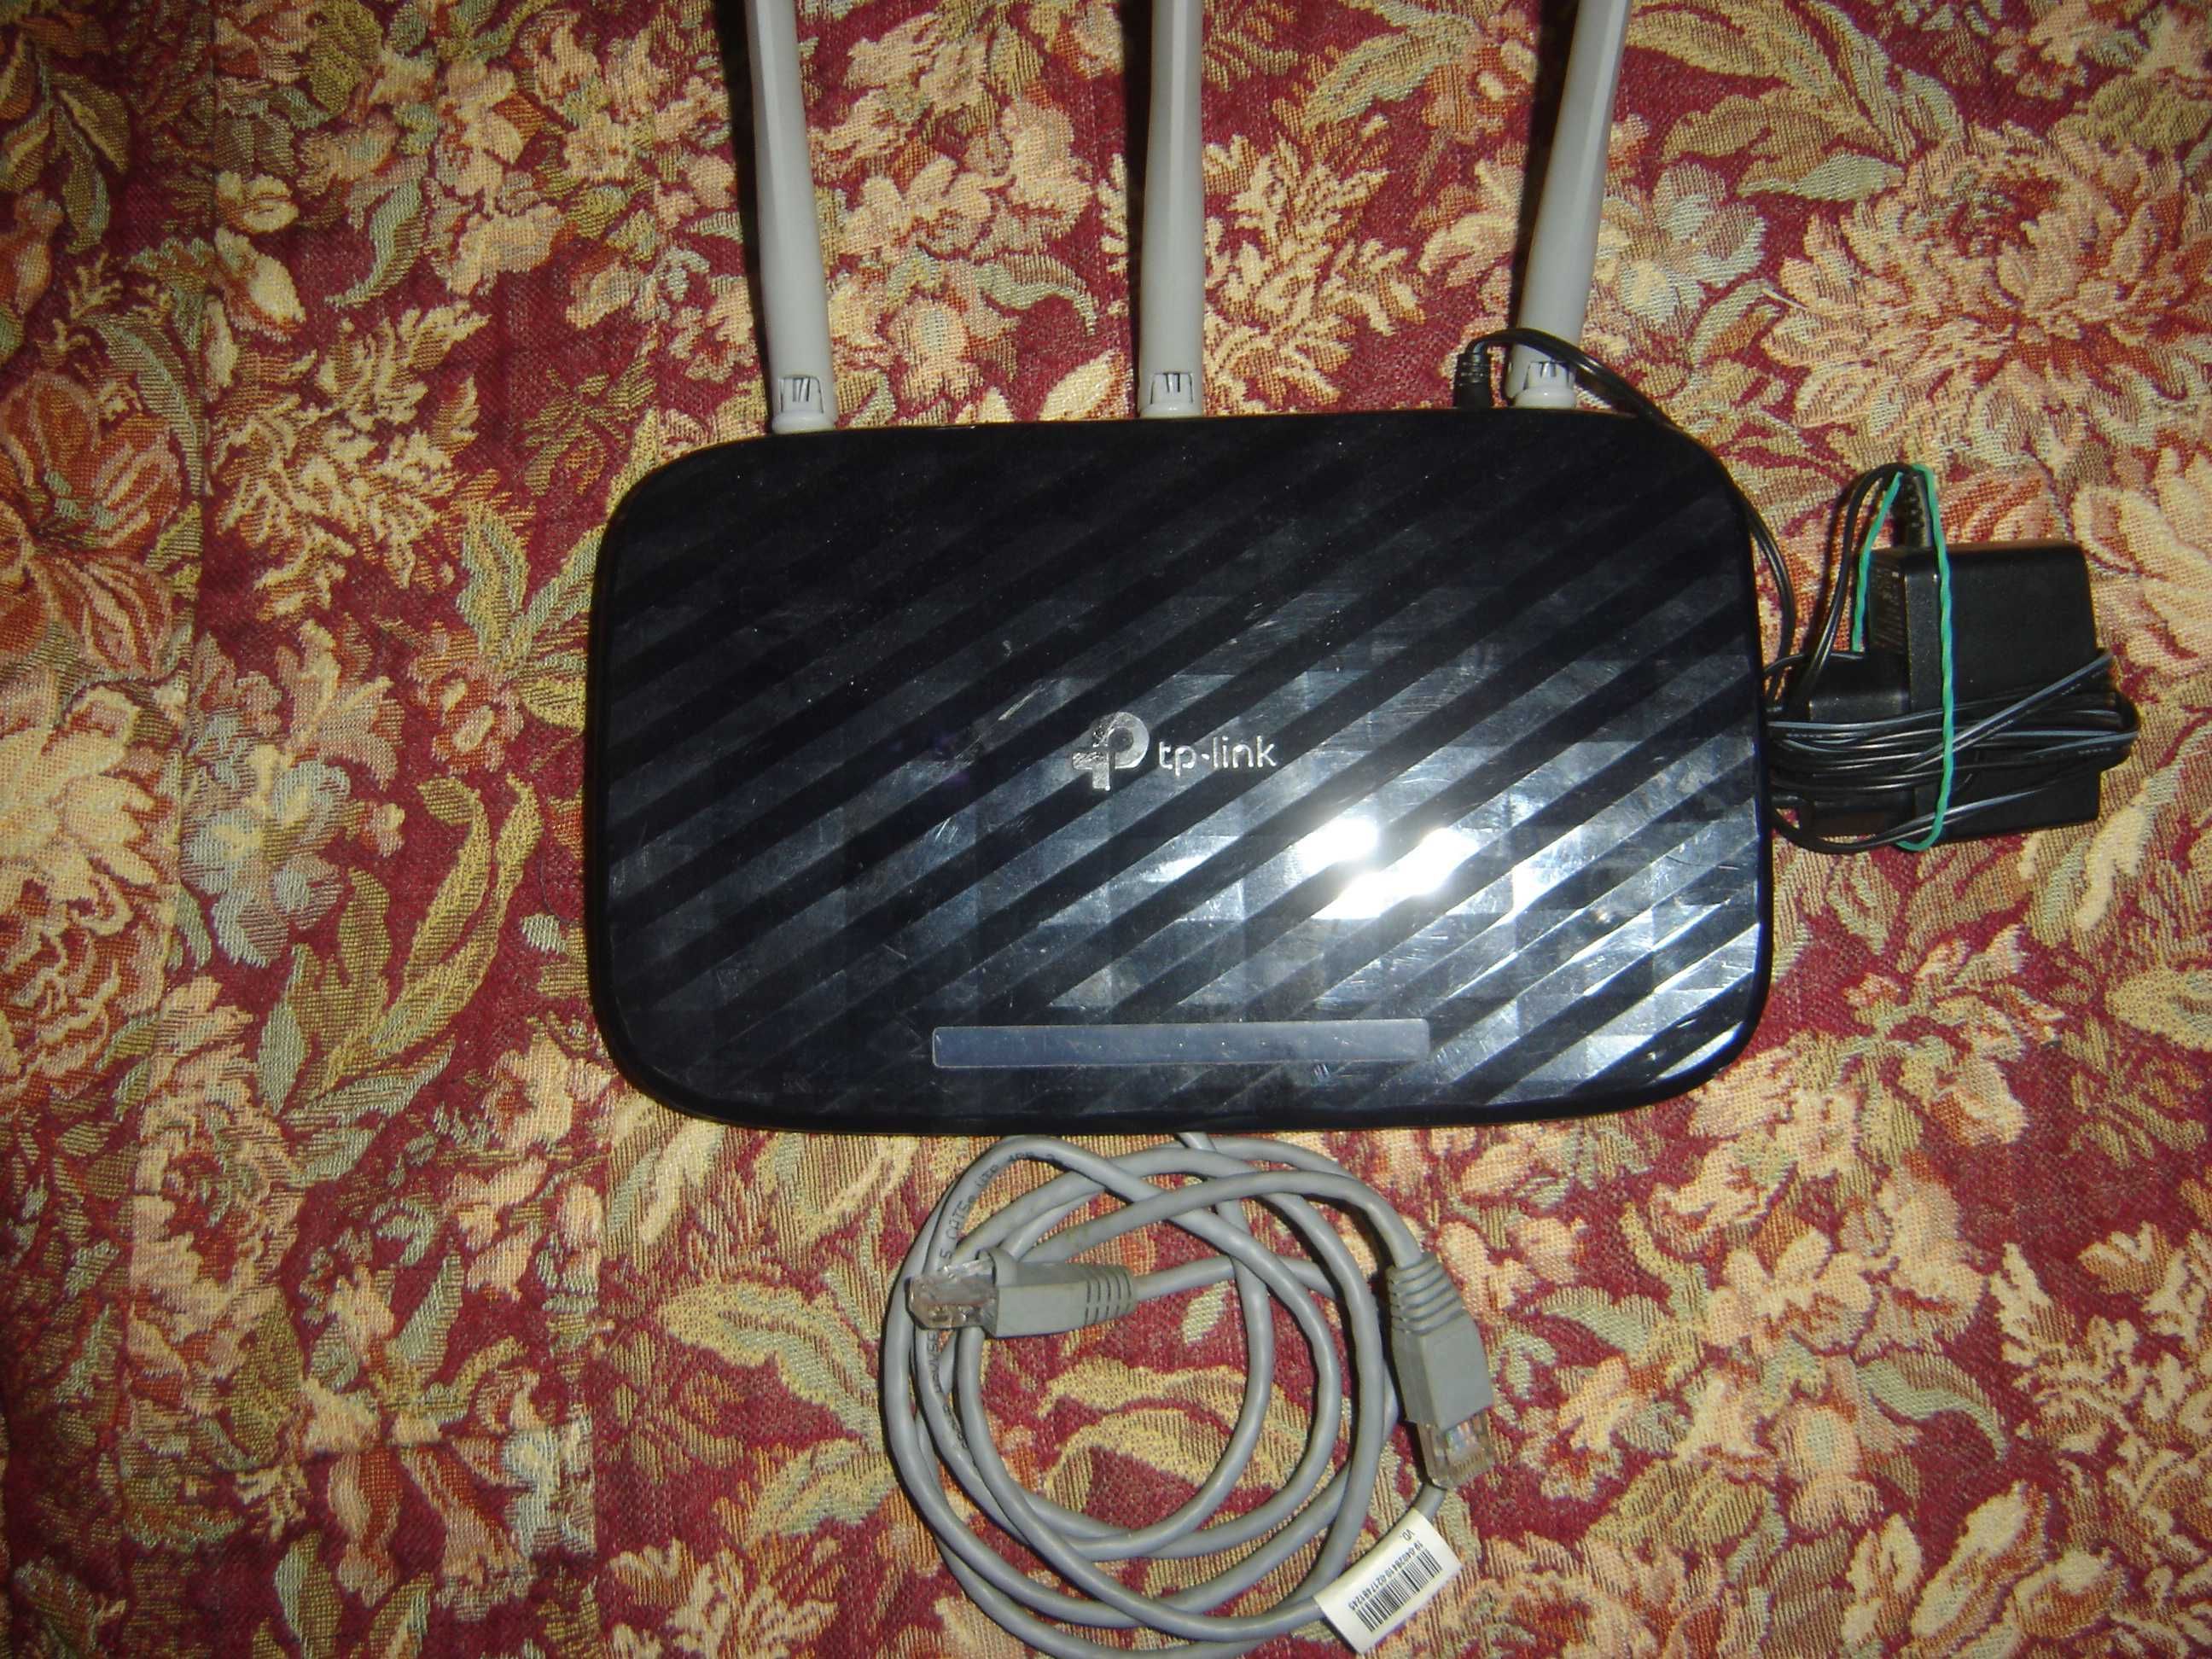 Vand Amplificator, TP-Link cu 3 antene,si cablu de instalare nou.